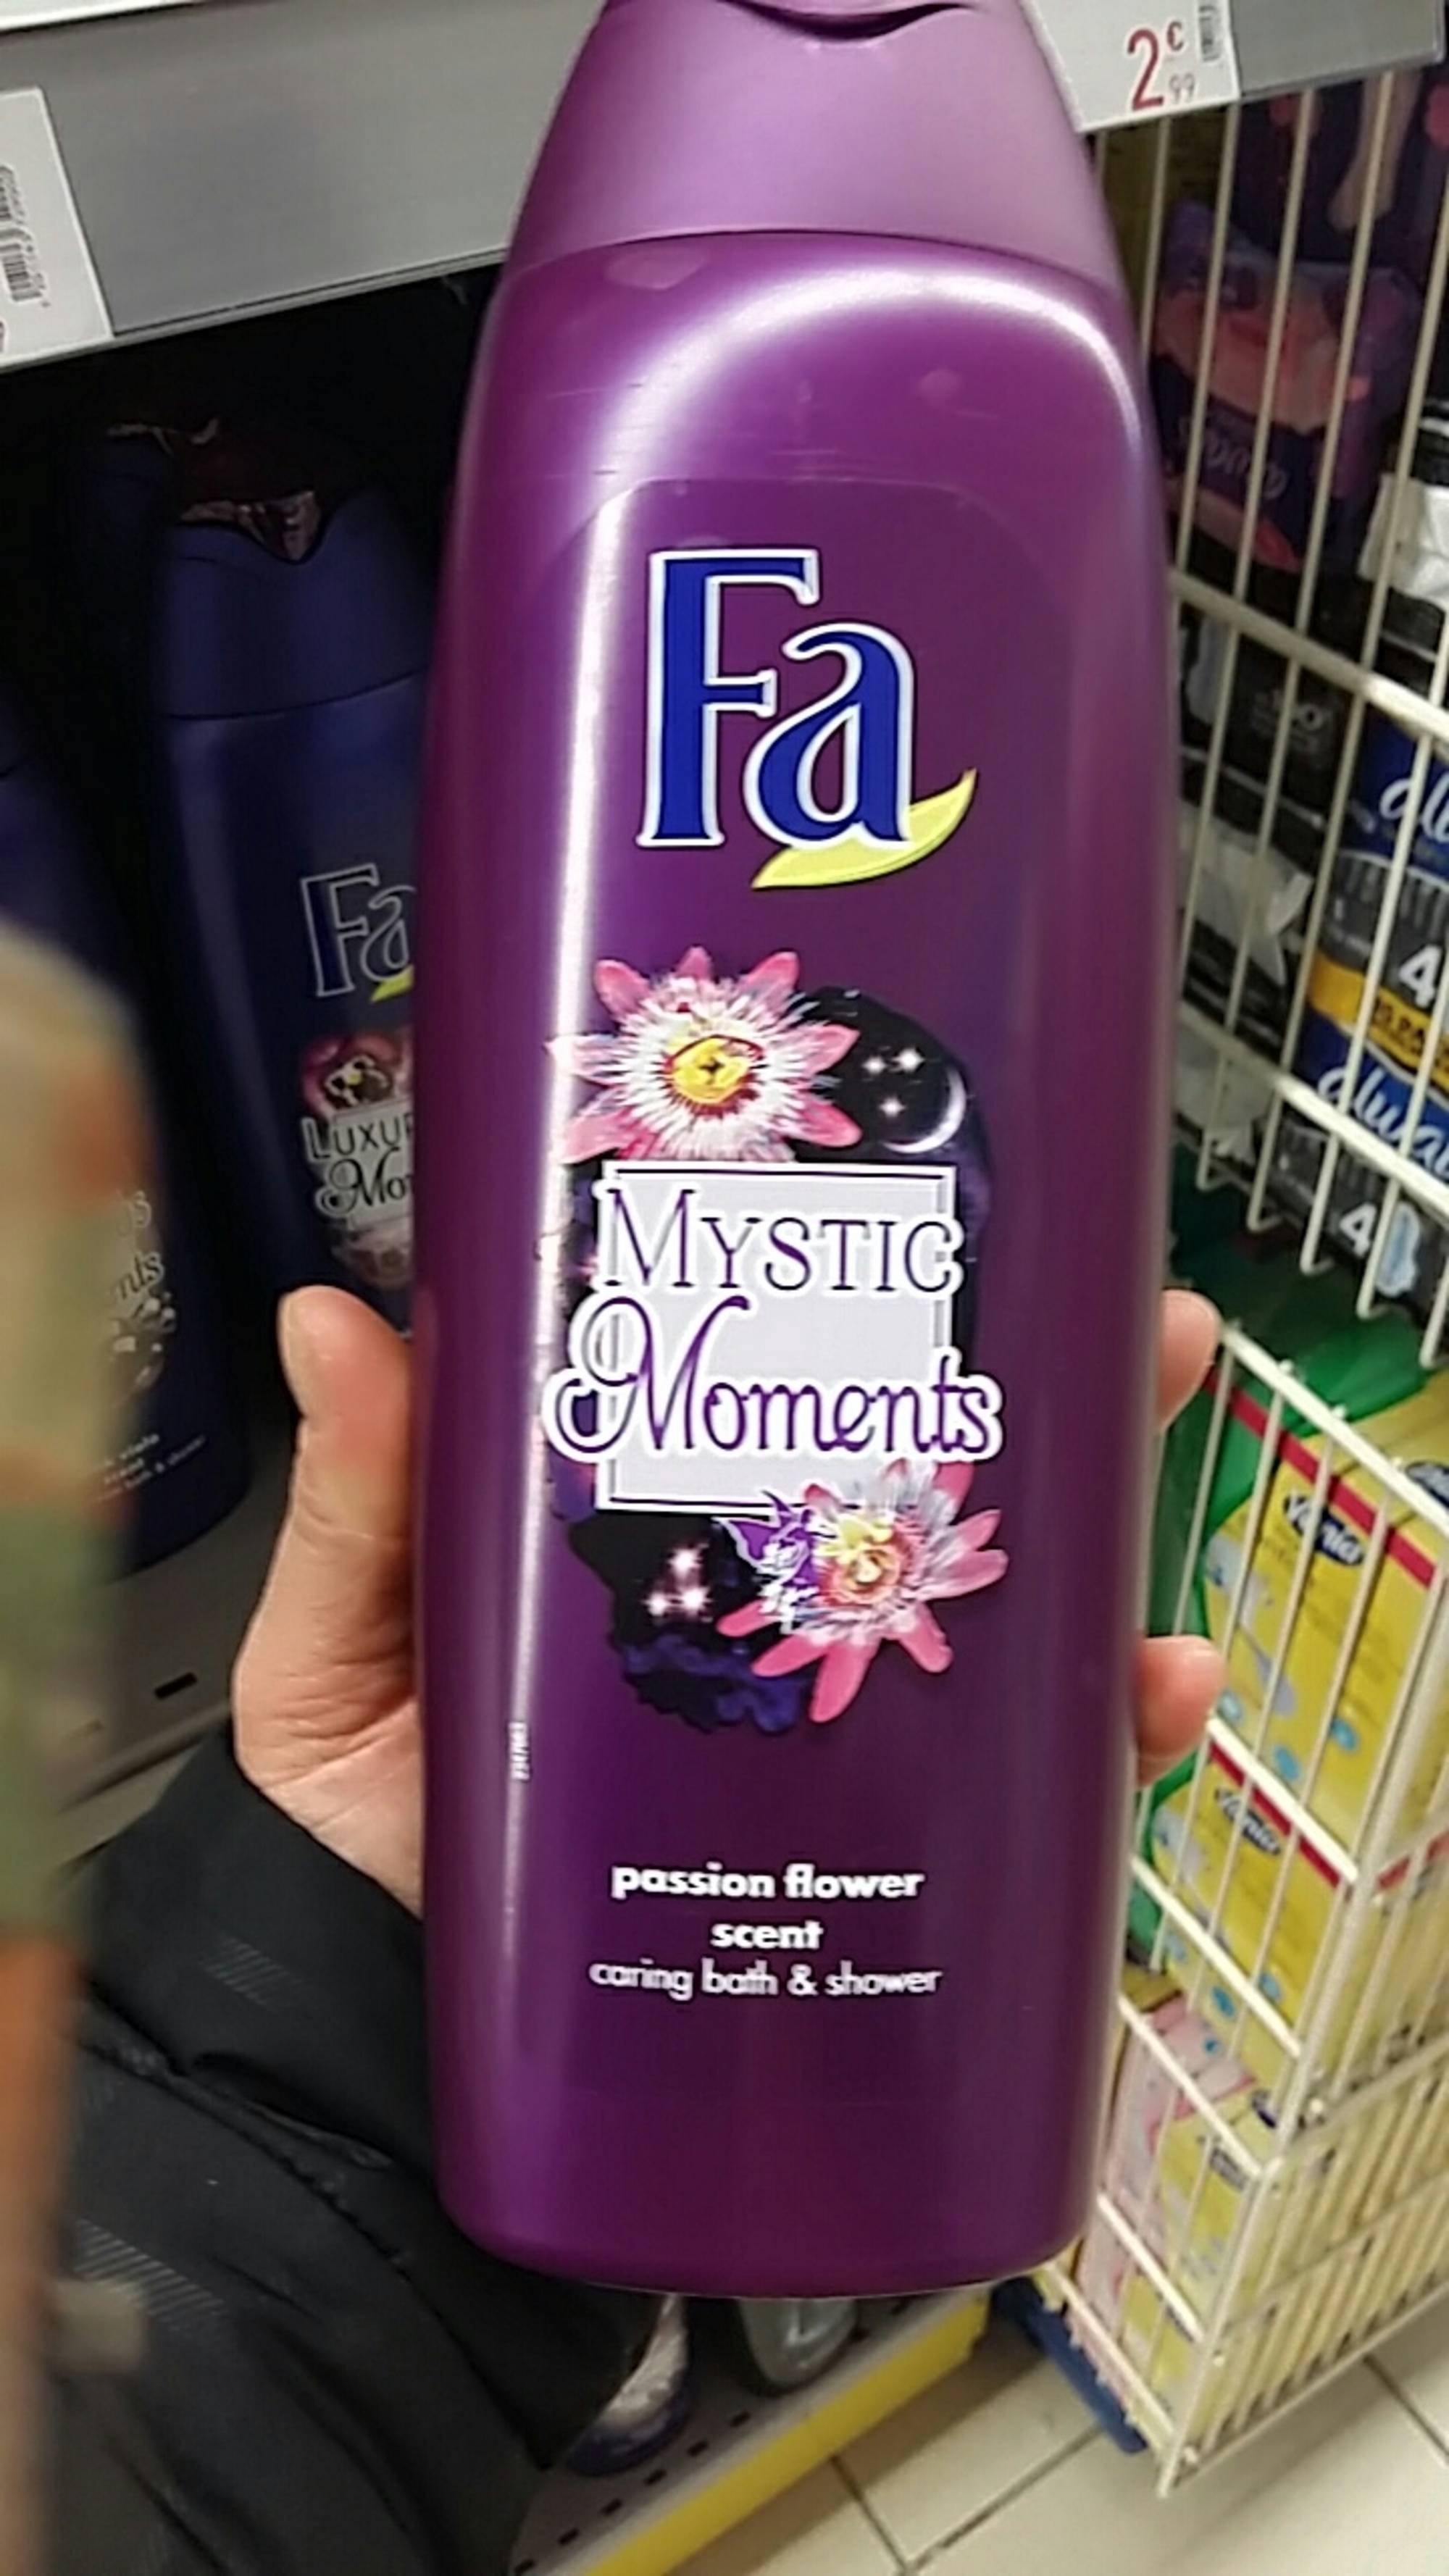 FA - Mystic Moments  - Caring bath & shower